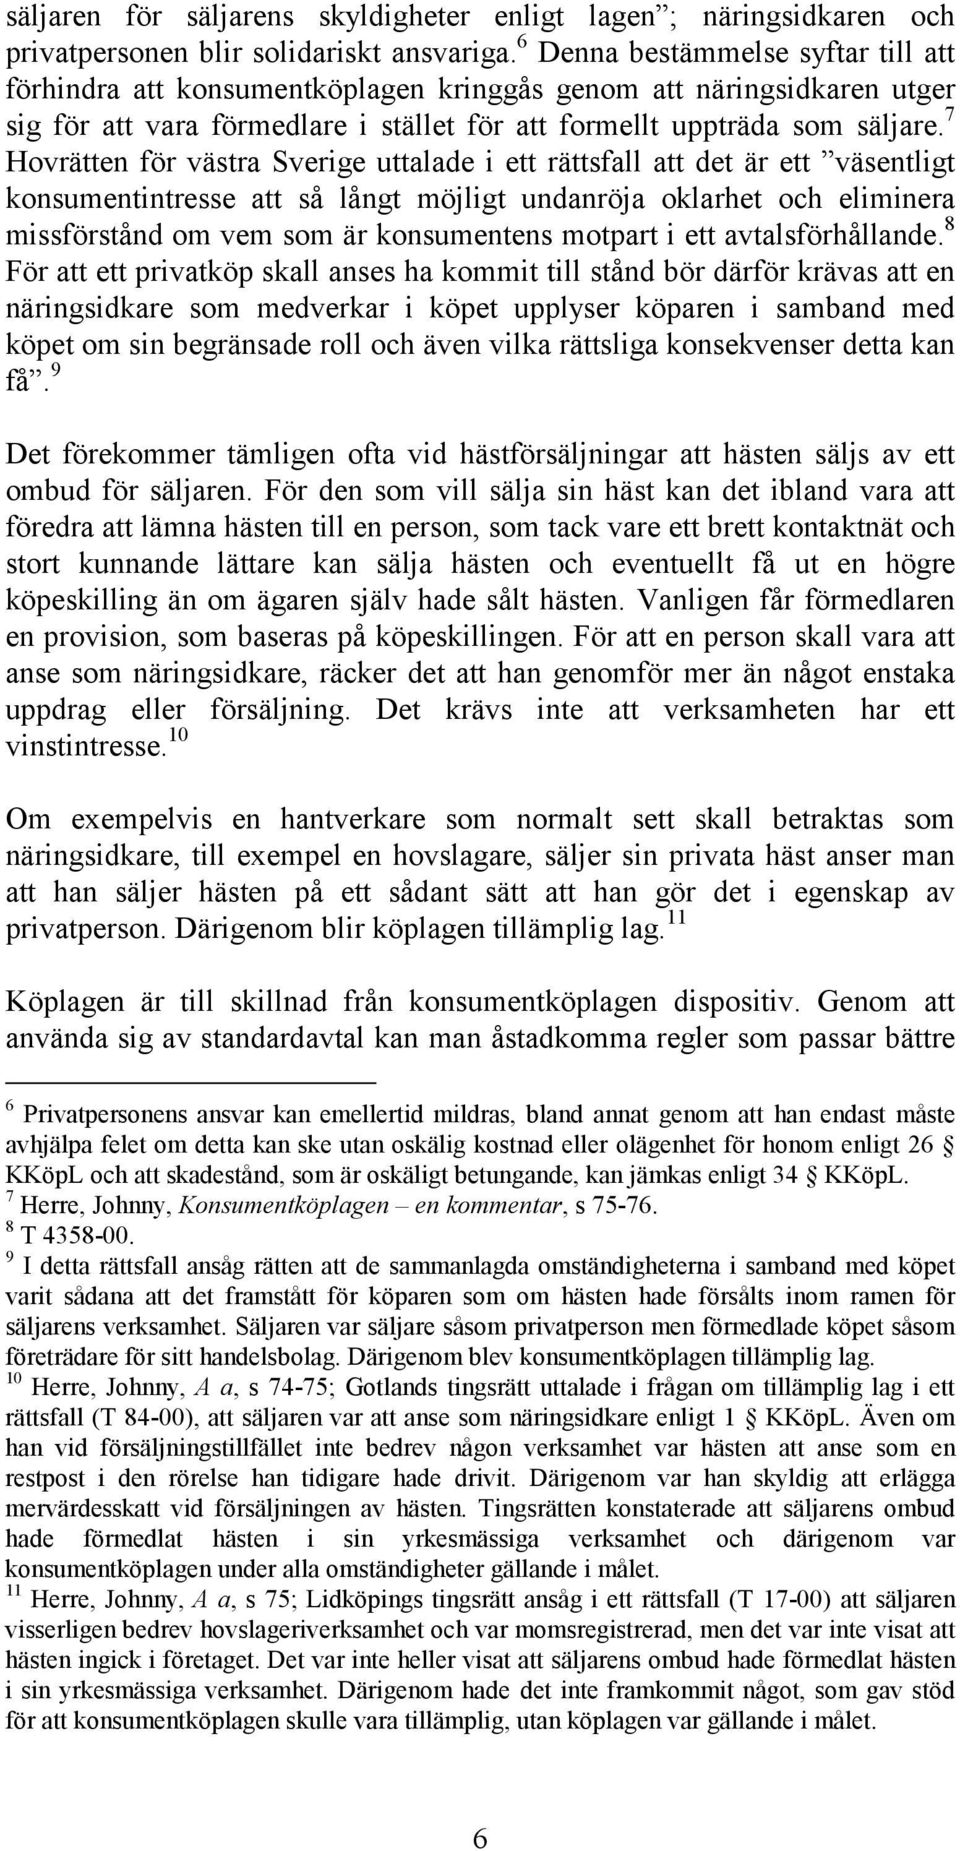 7 Hovrätten för västra Sverige uttalade i ett rättsfall att det är ett väsentligt konsumentintresse att så långt möjligt undanröja oklarhet och eliminera missförstånd om vem som är konsumentens